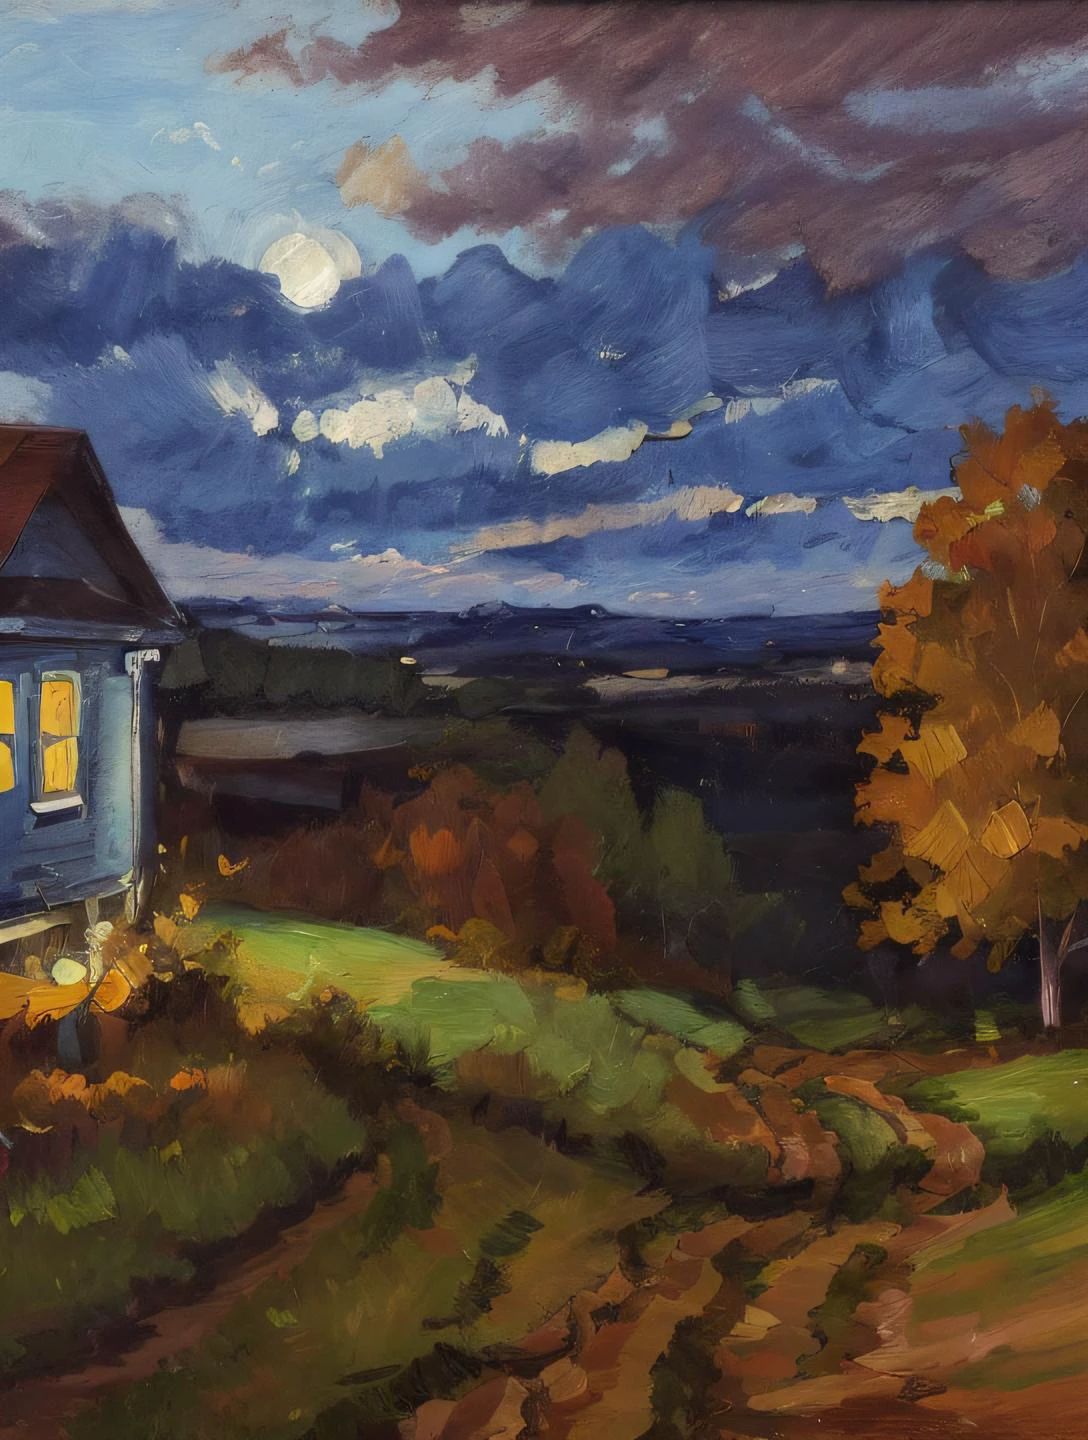 (картина mse) Синий час, Падать, гладкий, эстетический, дом в поле, облака, грунтовая дорога, ведущая к дому,